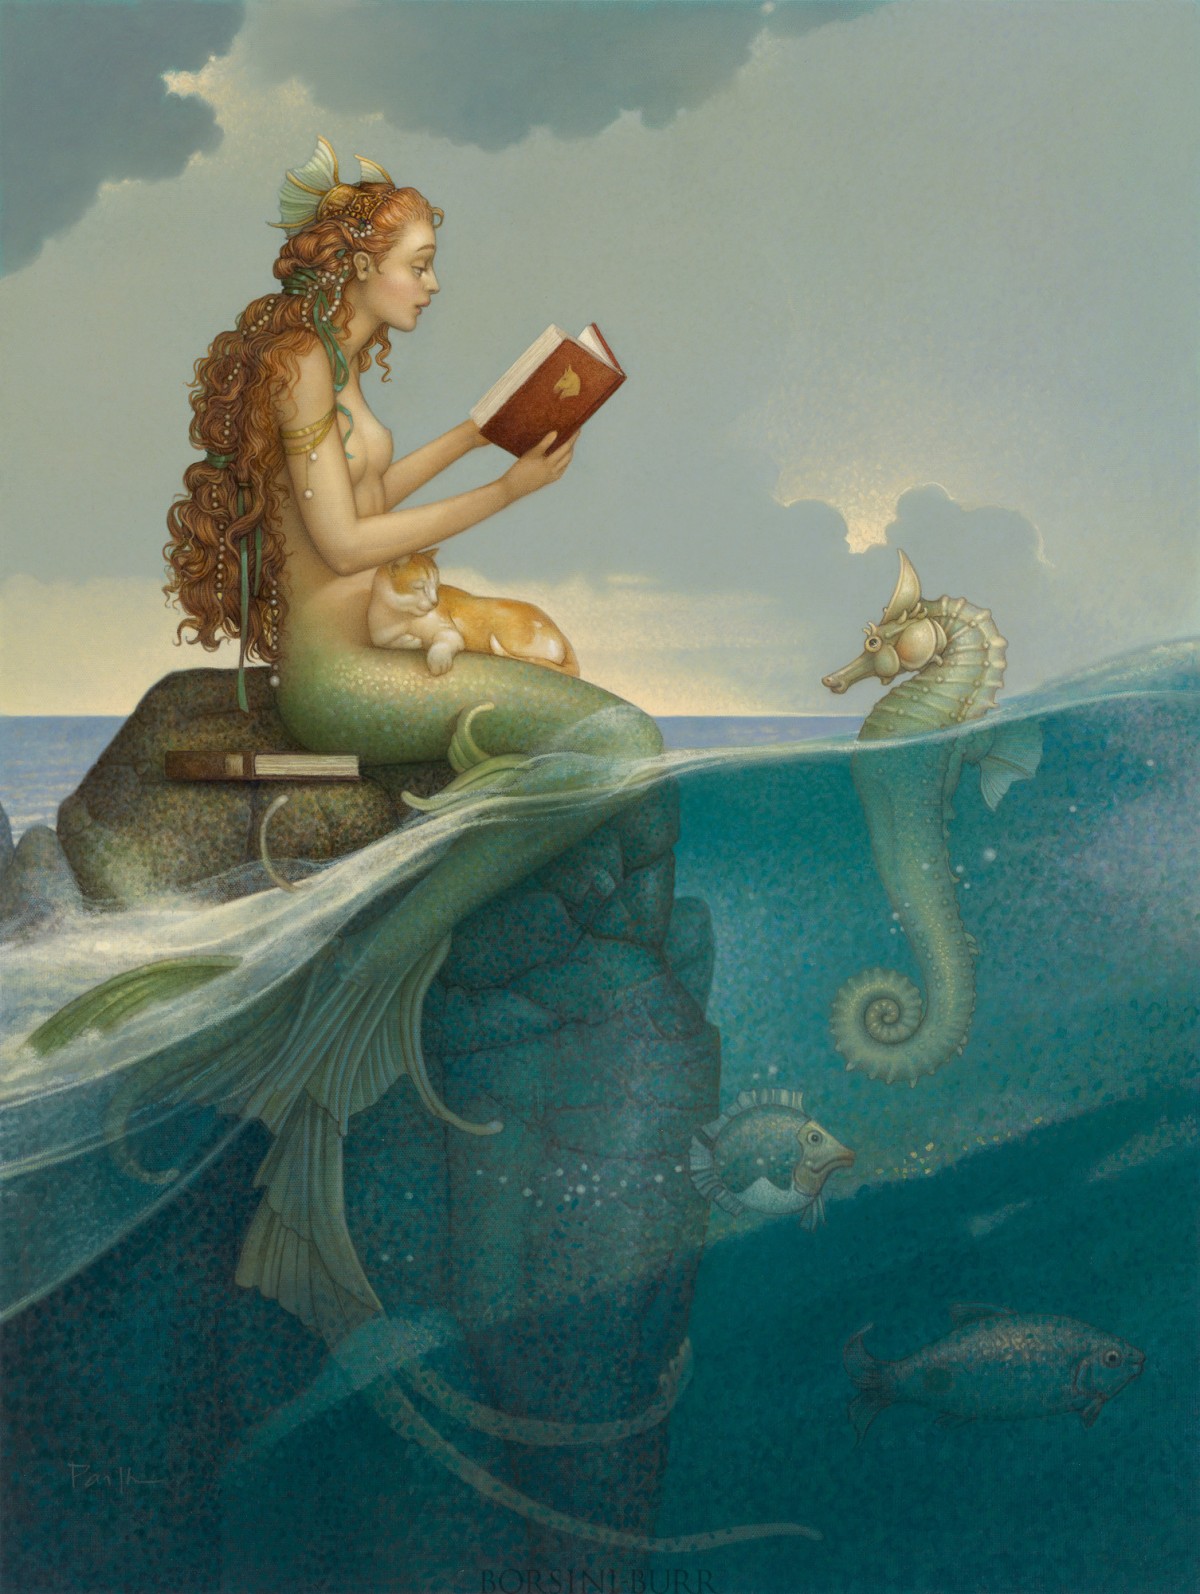 "Mermaid’s Secret" Original Oil on Canvas by Michael Parkes